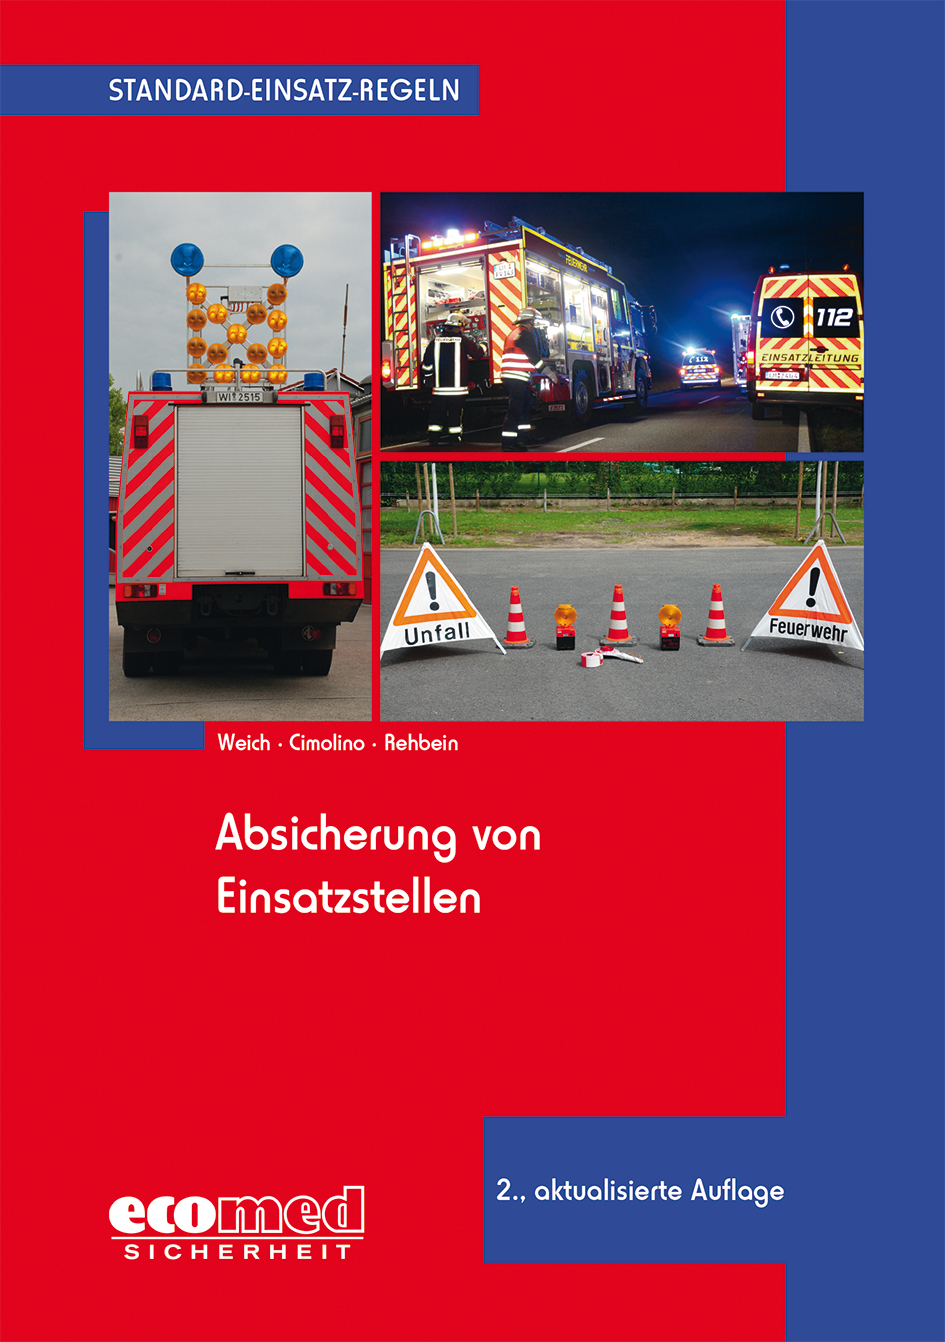 Einsatzpraxis (Ecomed-Verlag)